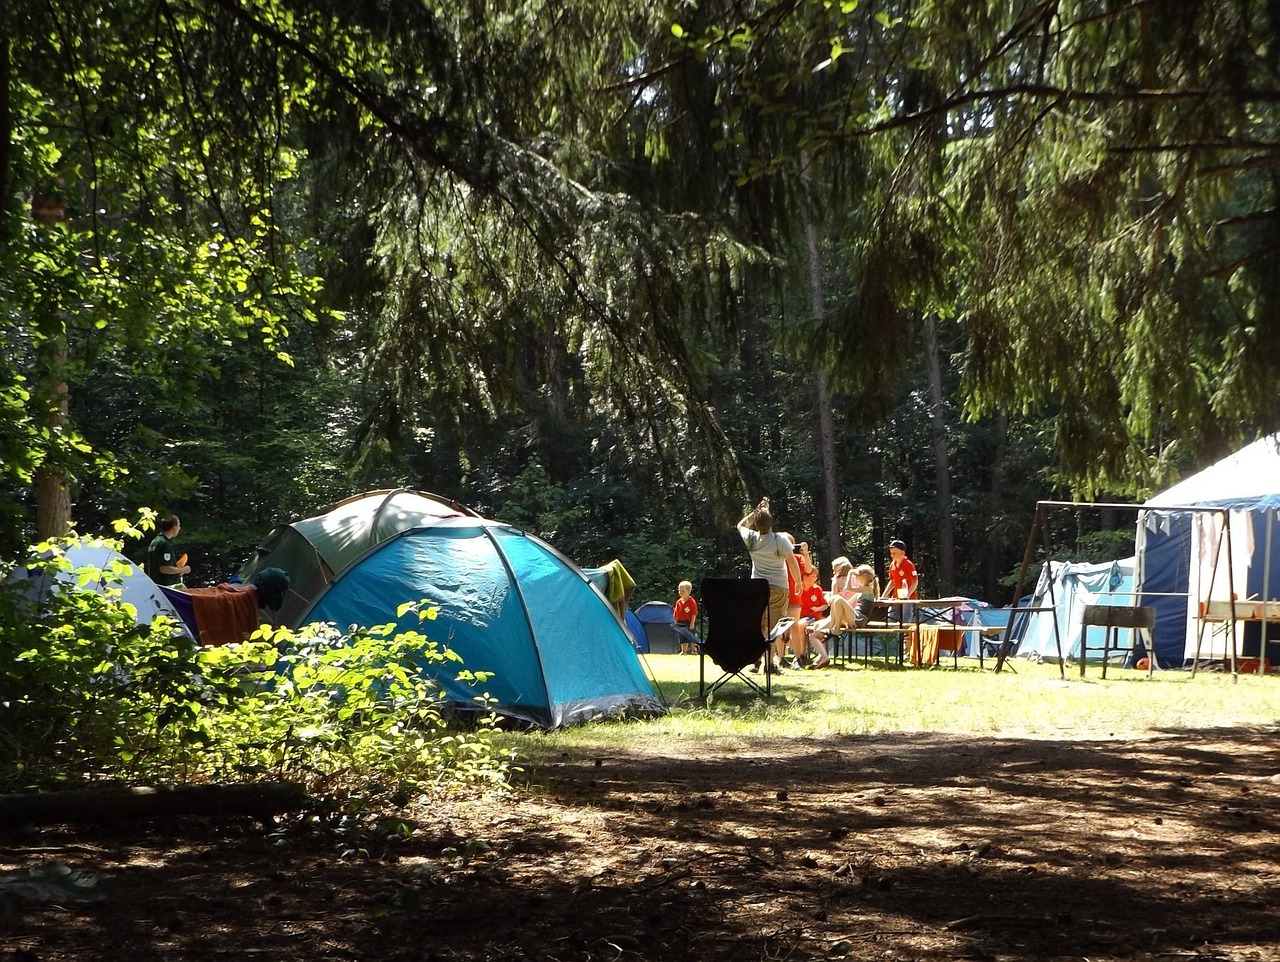 foto van camperende mensen op camping in bos